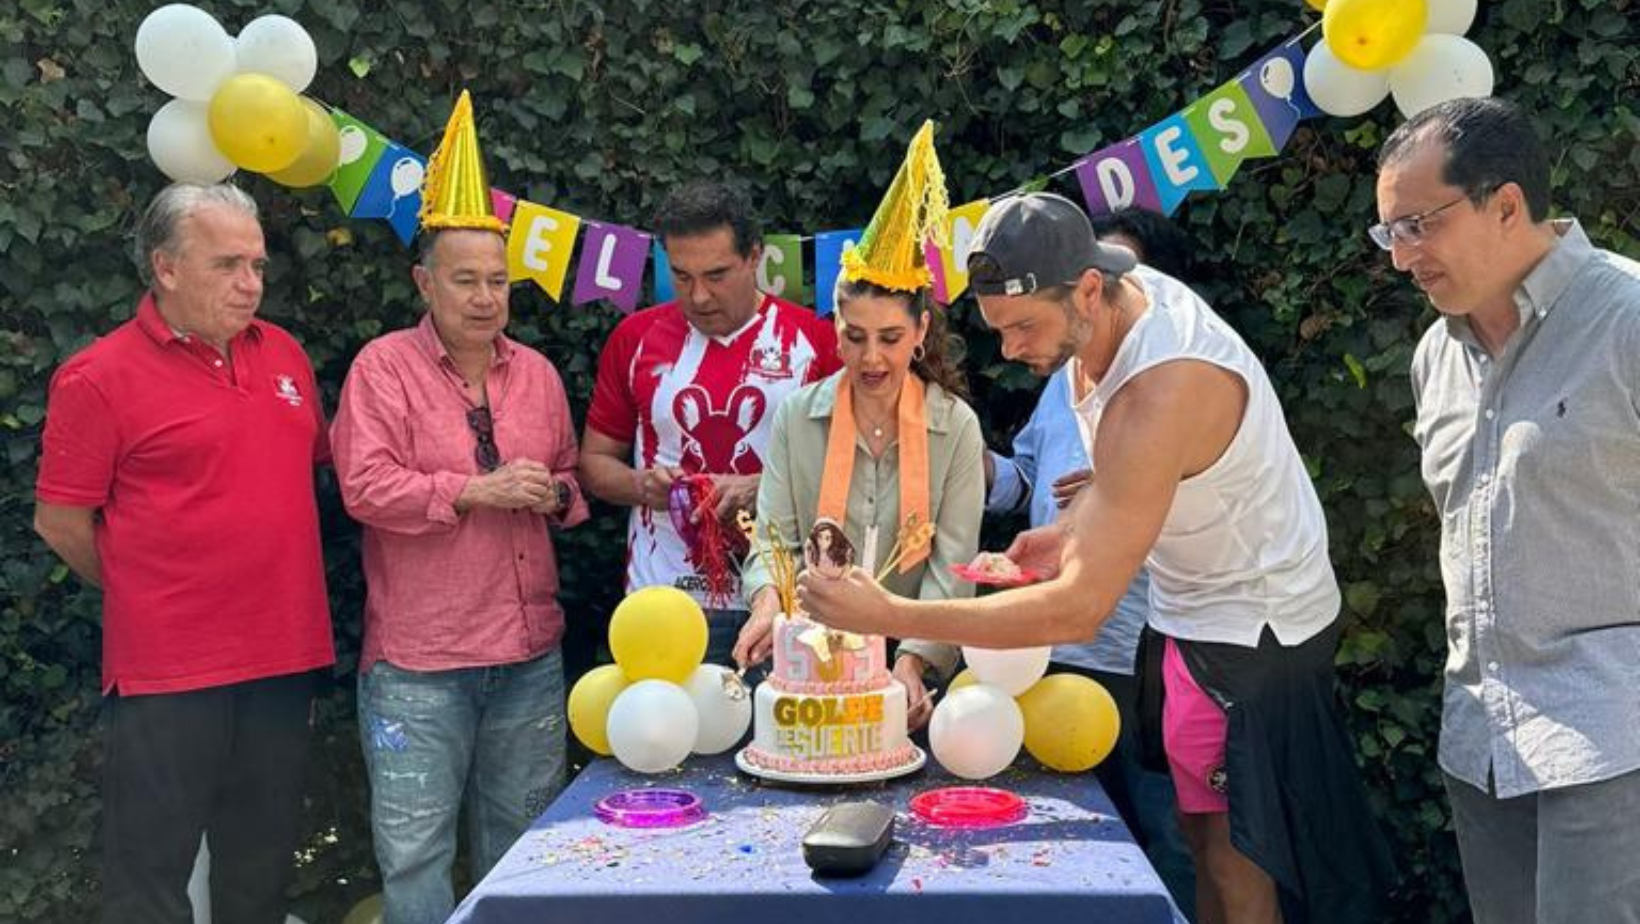 Elenco de Golpe de suerte sorprende a Mayrín Villanueva en su cumpleaños 